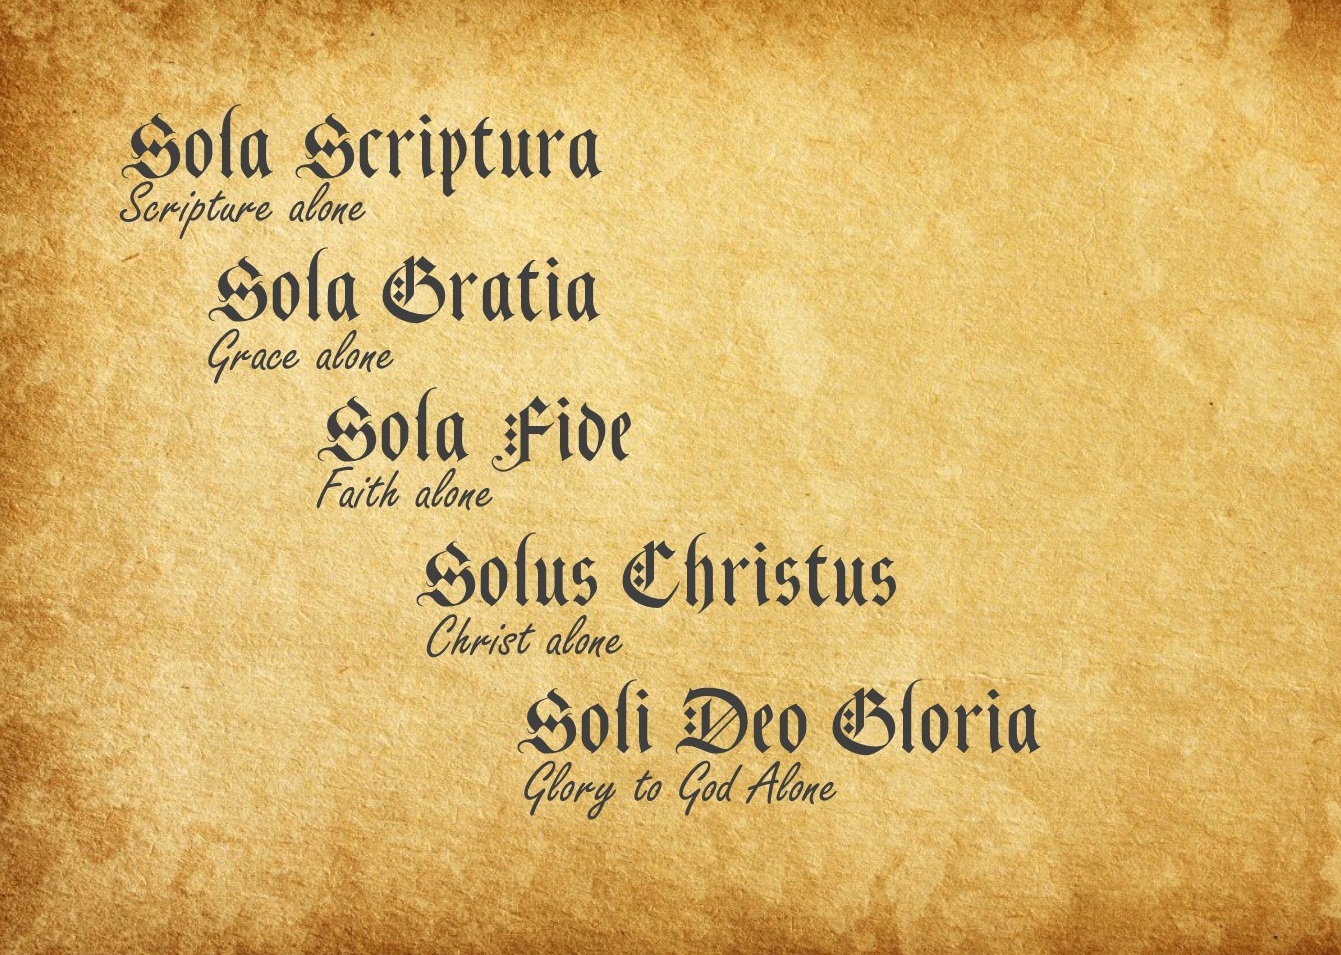 The Five Solas